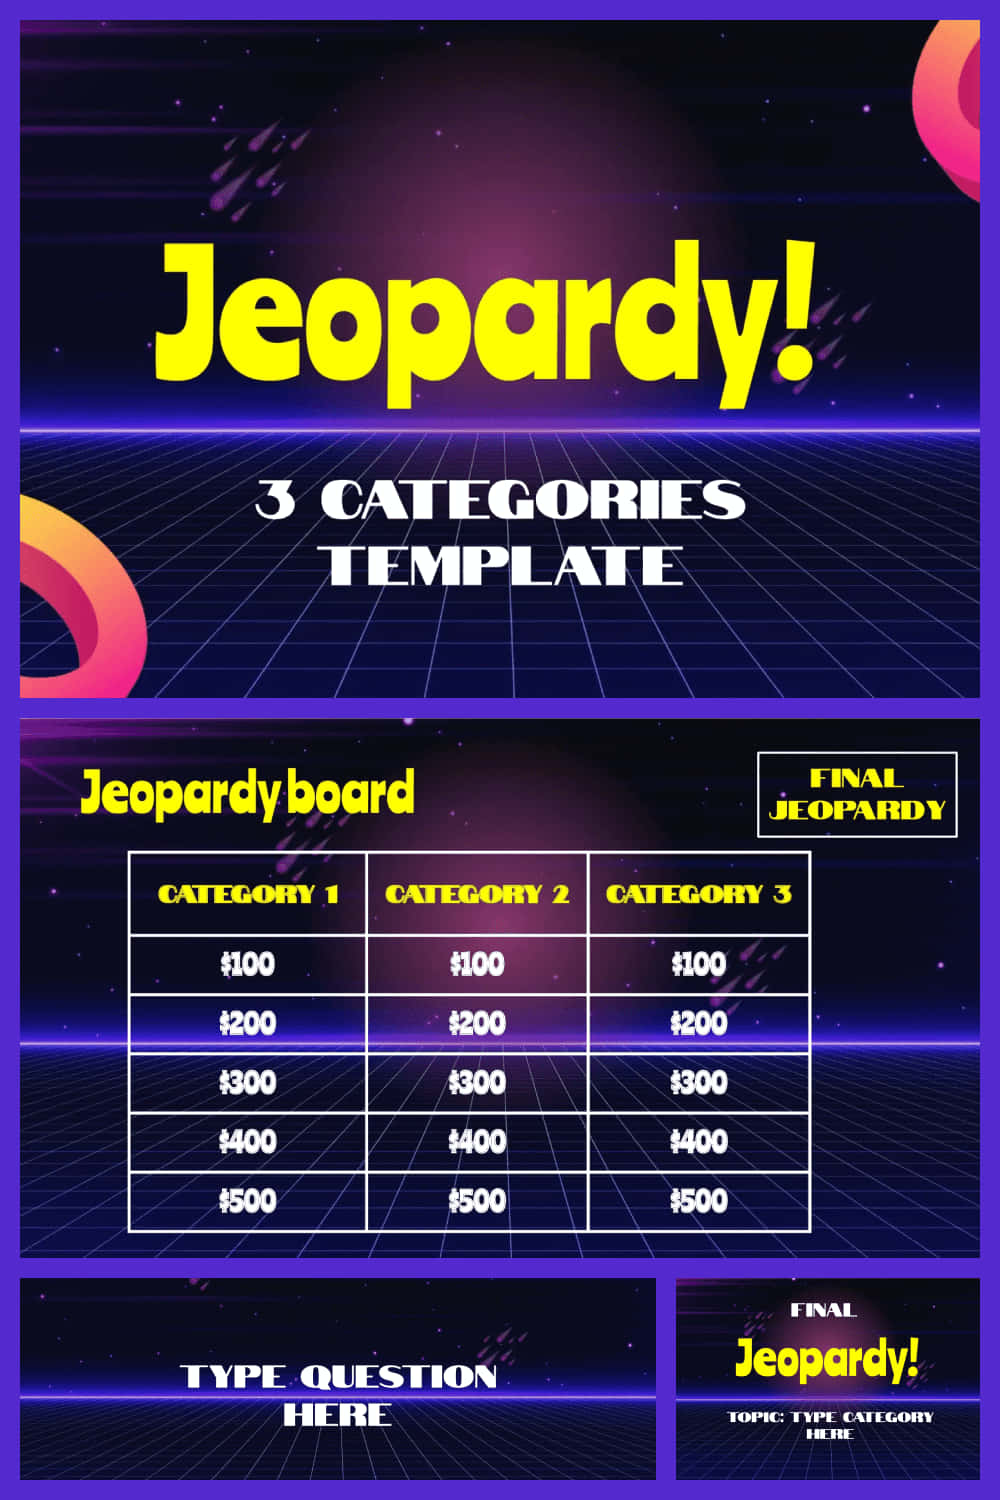 Jeopardy3 Kategorien Vorlage